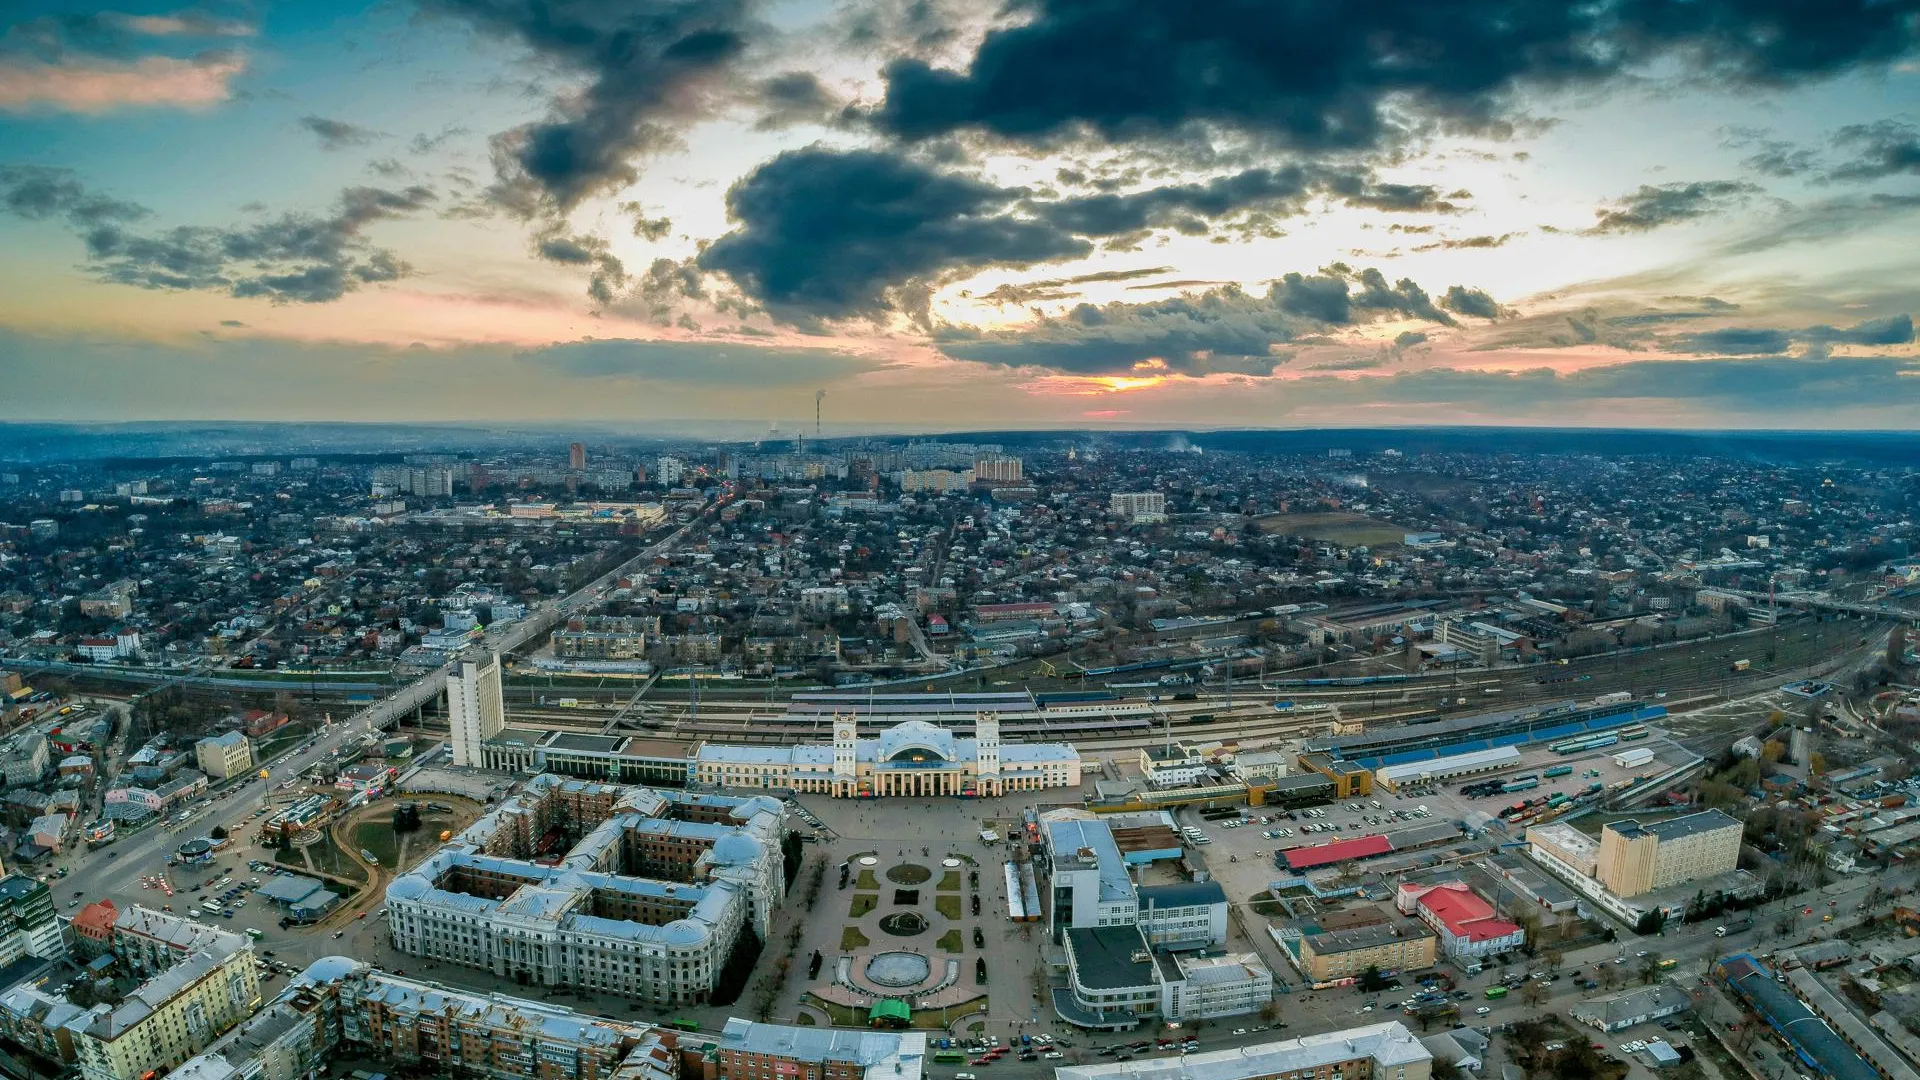 Мэр Харькова Терехов анонсировал строительство города под землей за €225 миллионов